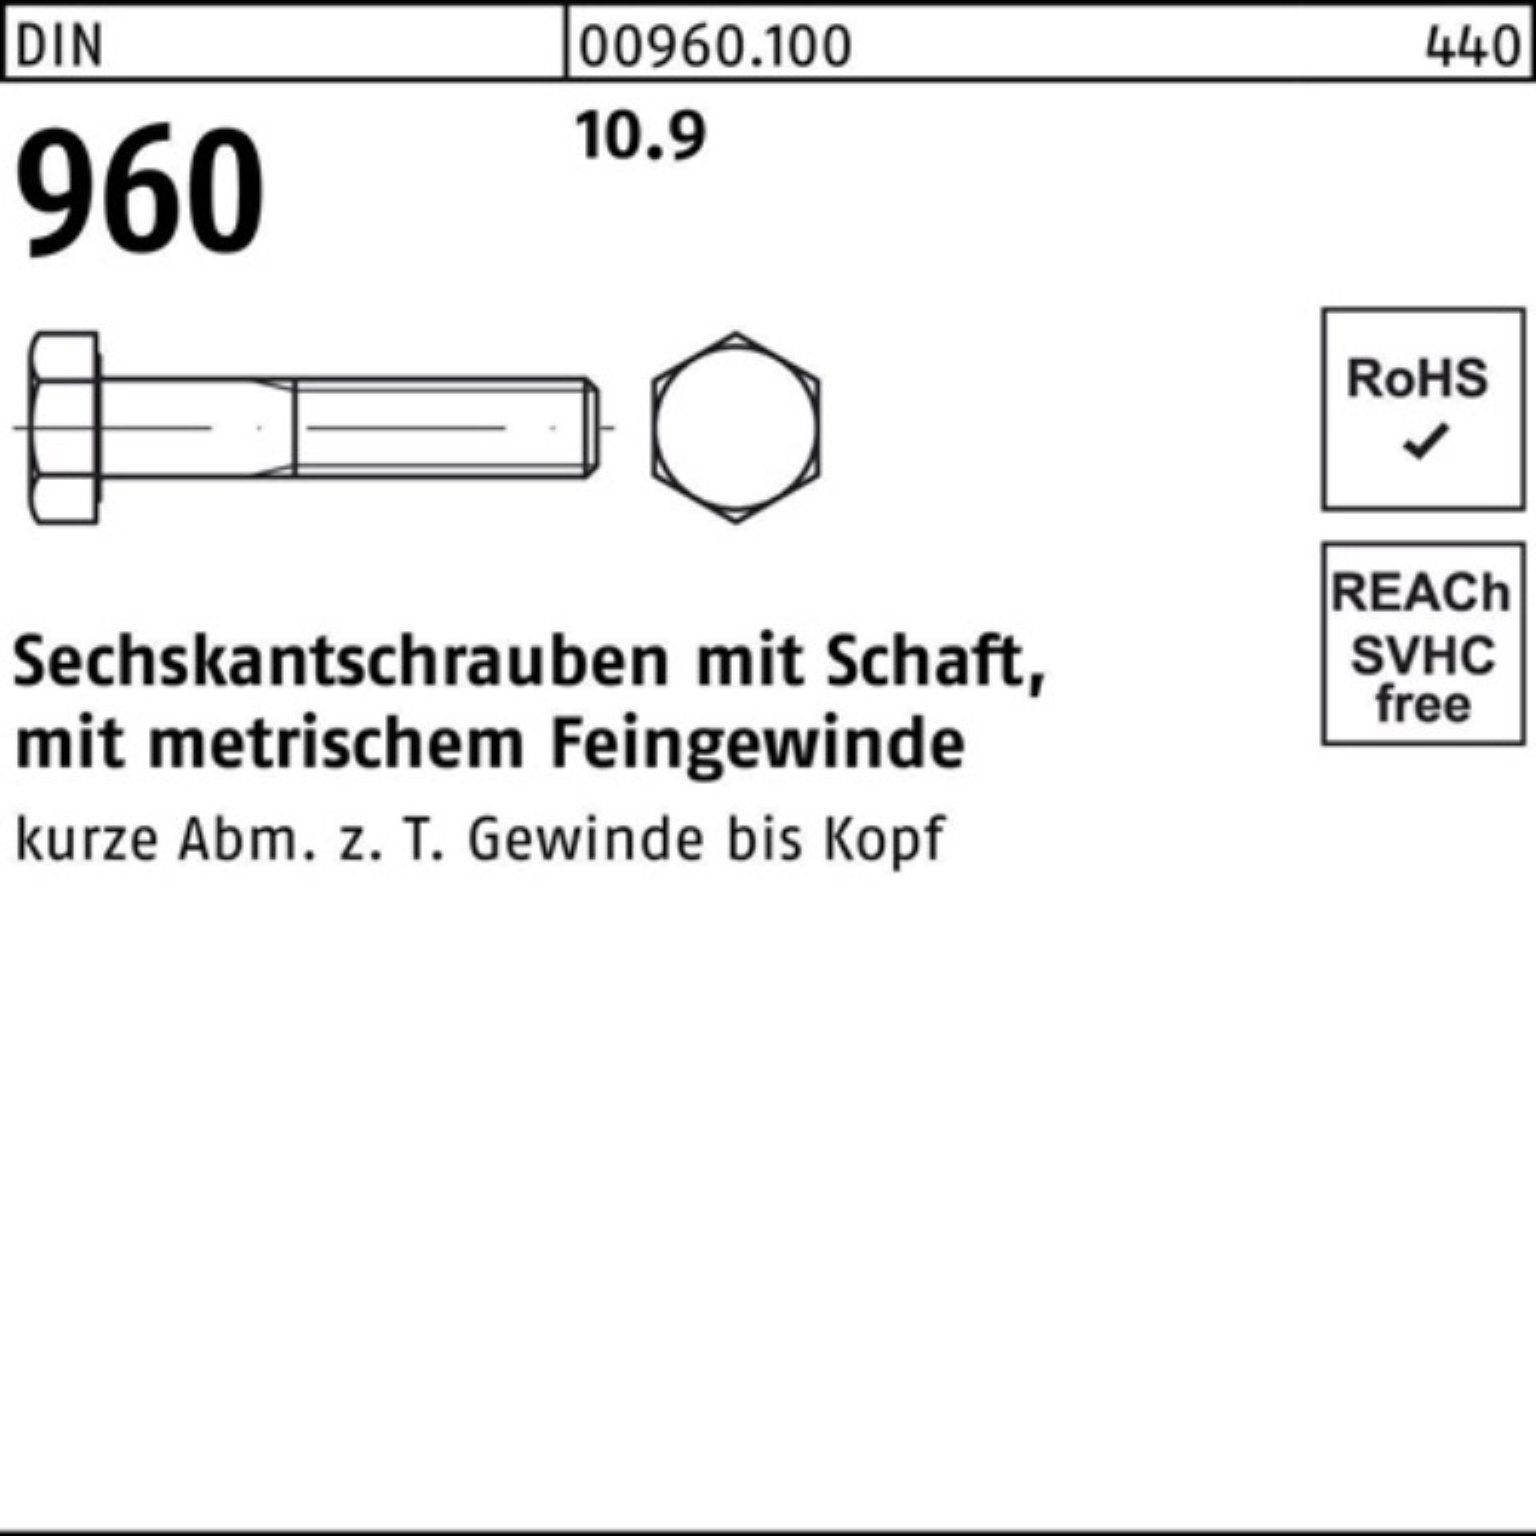 10.9 Reyher 50 M12x1,25x130 DIN Pack Stüc 100er Schaft Sechskantschraube Sechskantschraube 960